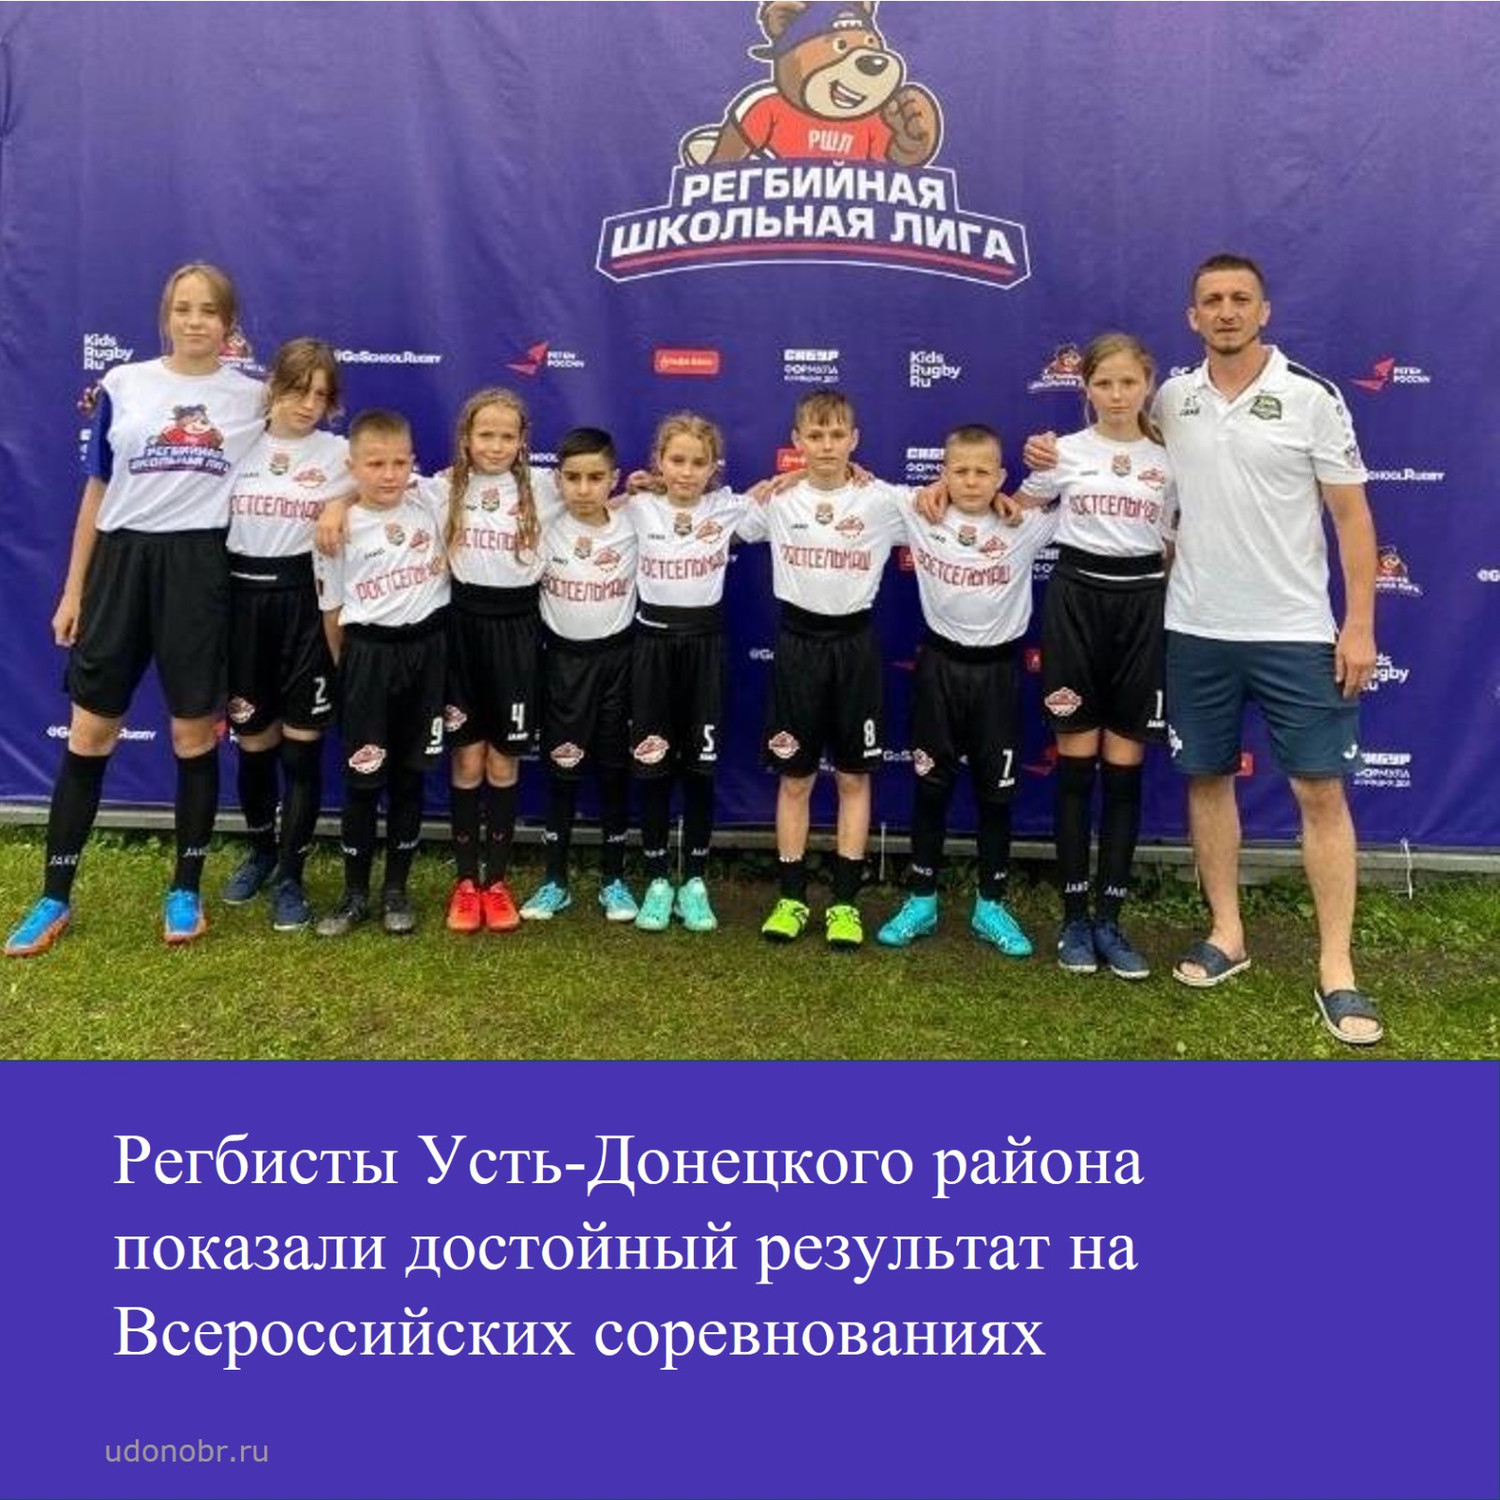 Регбисты Усть-Донецкого района показали достойный результат на Всероссийских соревнованиях